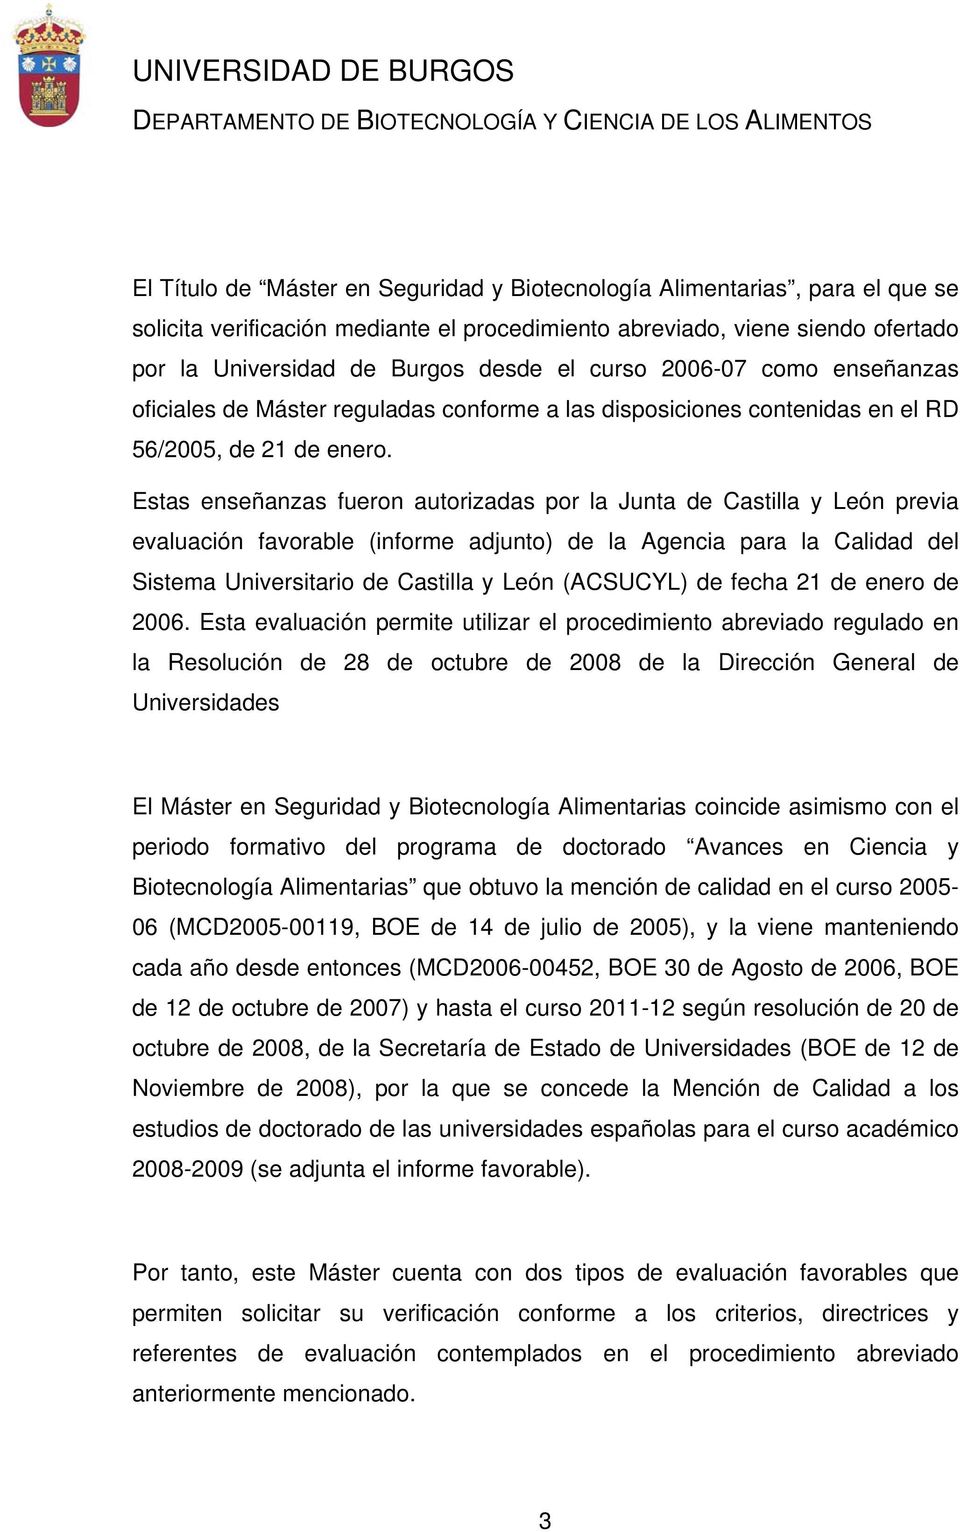 Estas enseñanzas fueron autorizadas por la Junta de Castilla y León previa evaluación favorable (informe adjunto) de la Agencia para la Calidad del Sistema Universitario de Castilla y León (ACSUCYL)